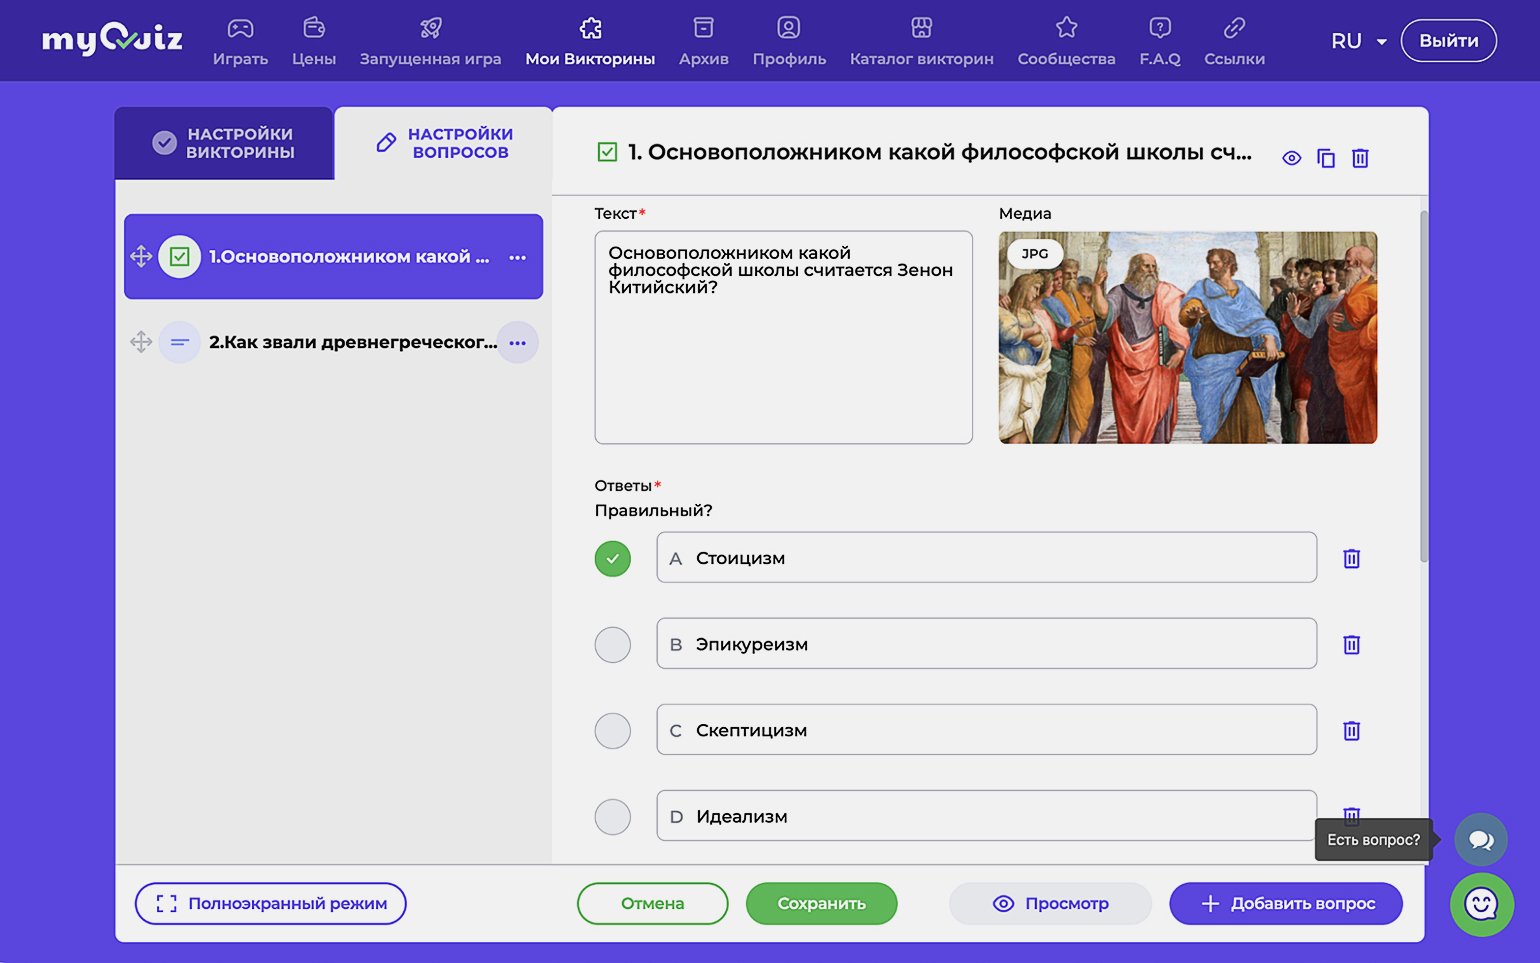 Как зарегистрироваться в UQUIZ. MYQUIZ как вывести трансляцию. Как сделать свой тест на UQUIZ на русском. Ответы на проверку друзей(.